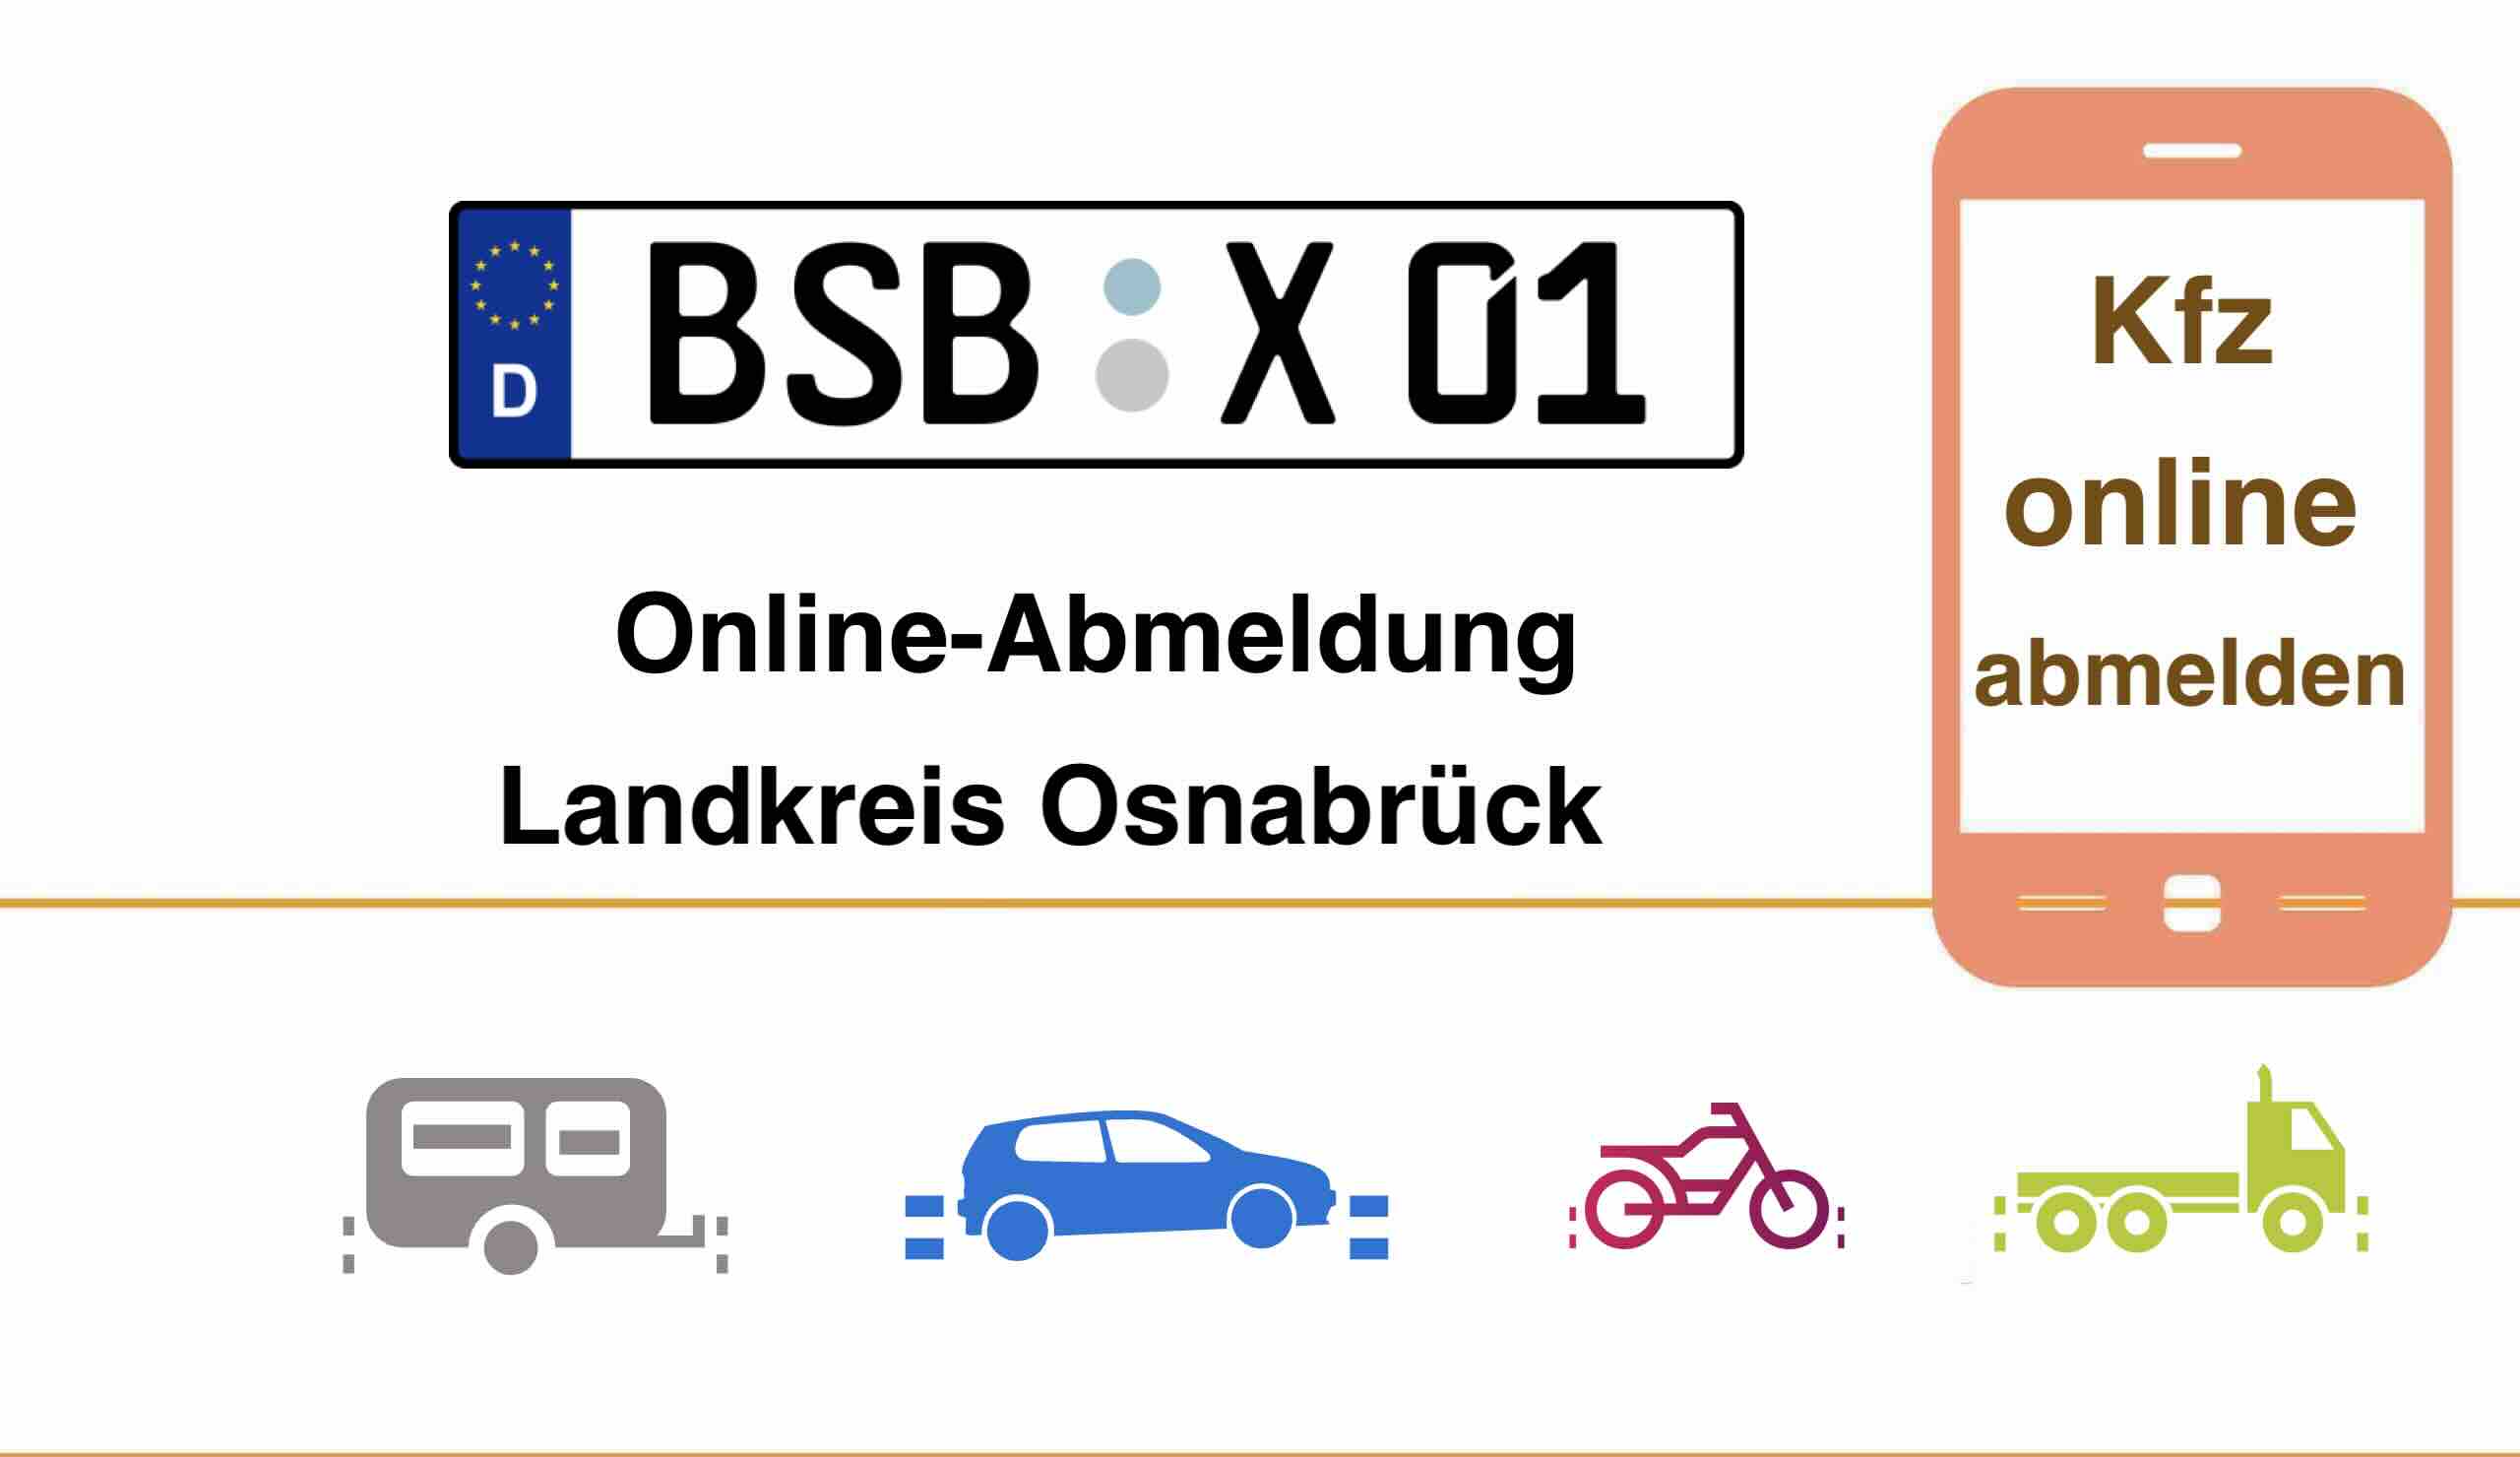 Kfz Online-Abmeldung im Landkreis Osnabrück 